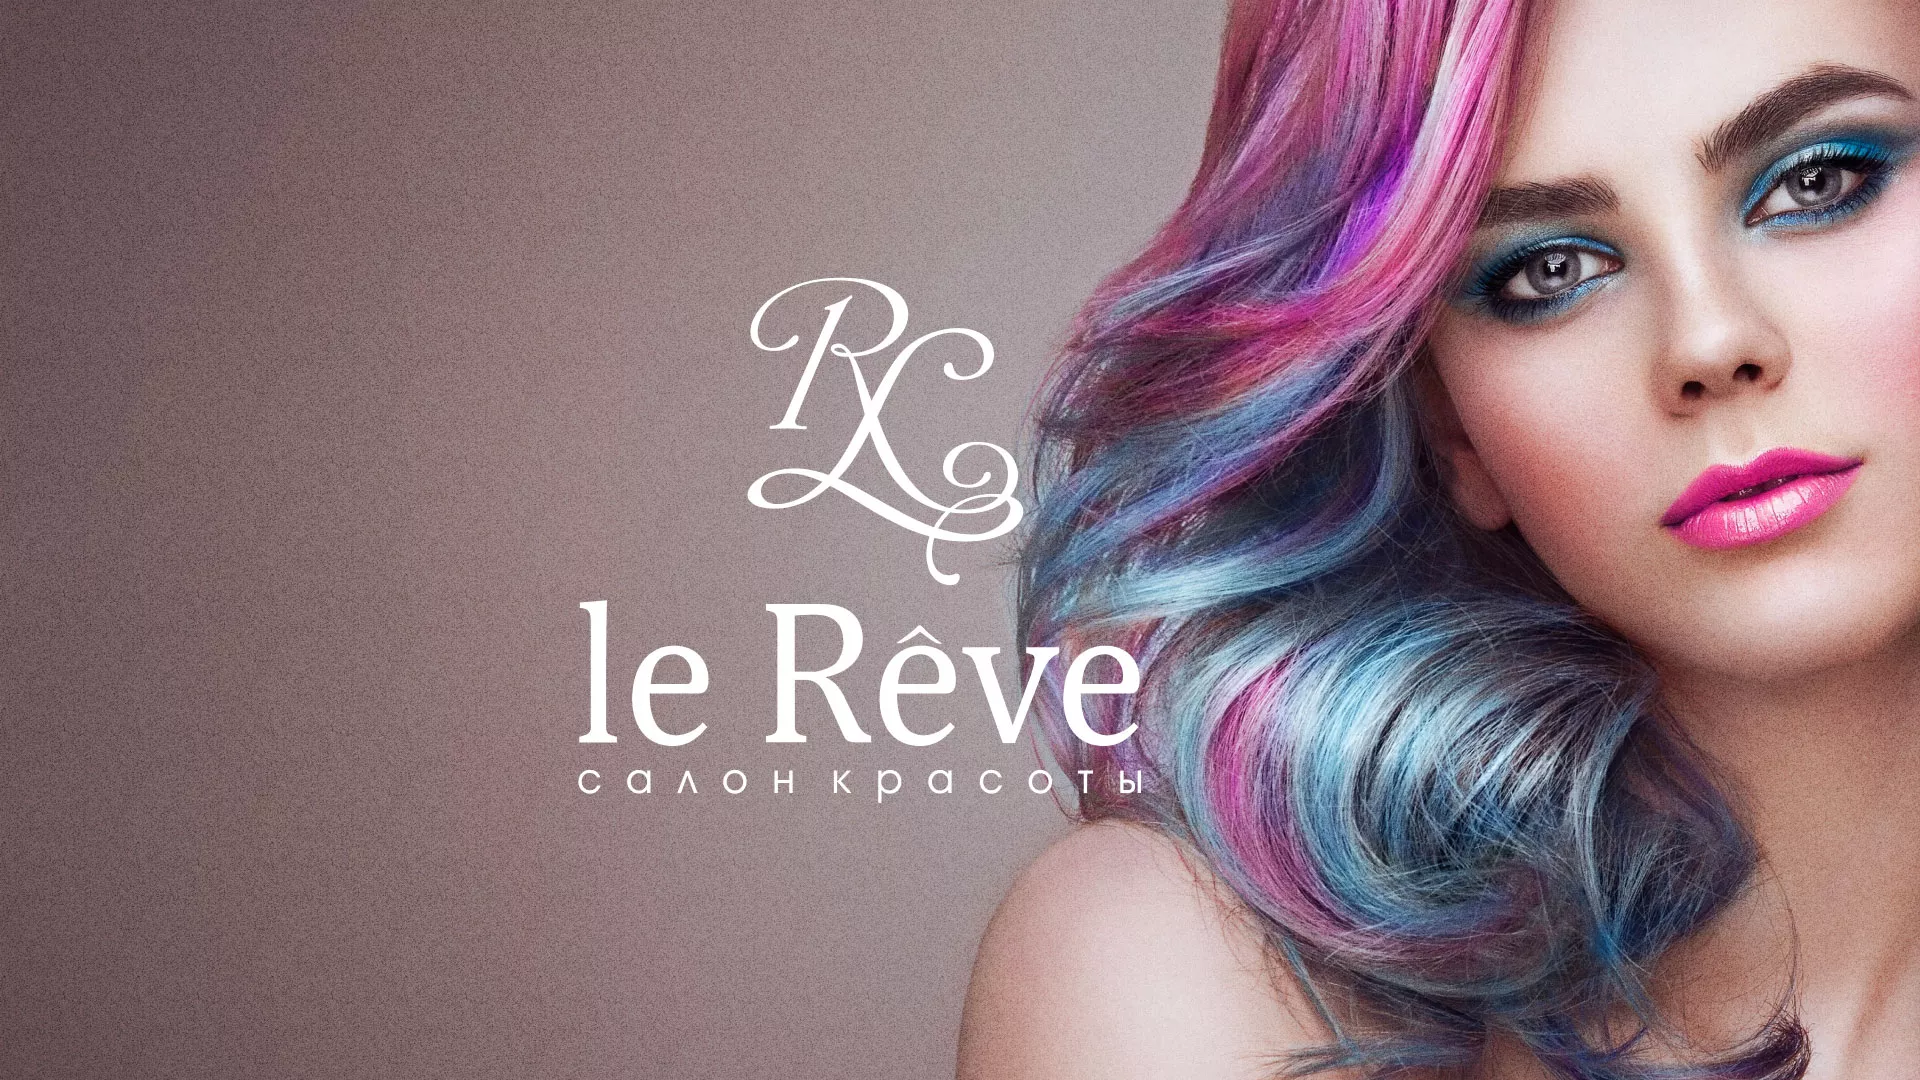 Создание сайта для салона красоты «Le Reve» в Белокурихе